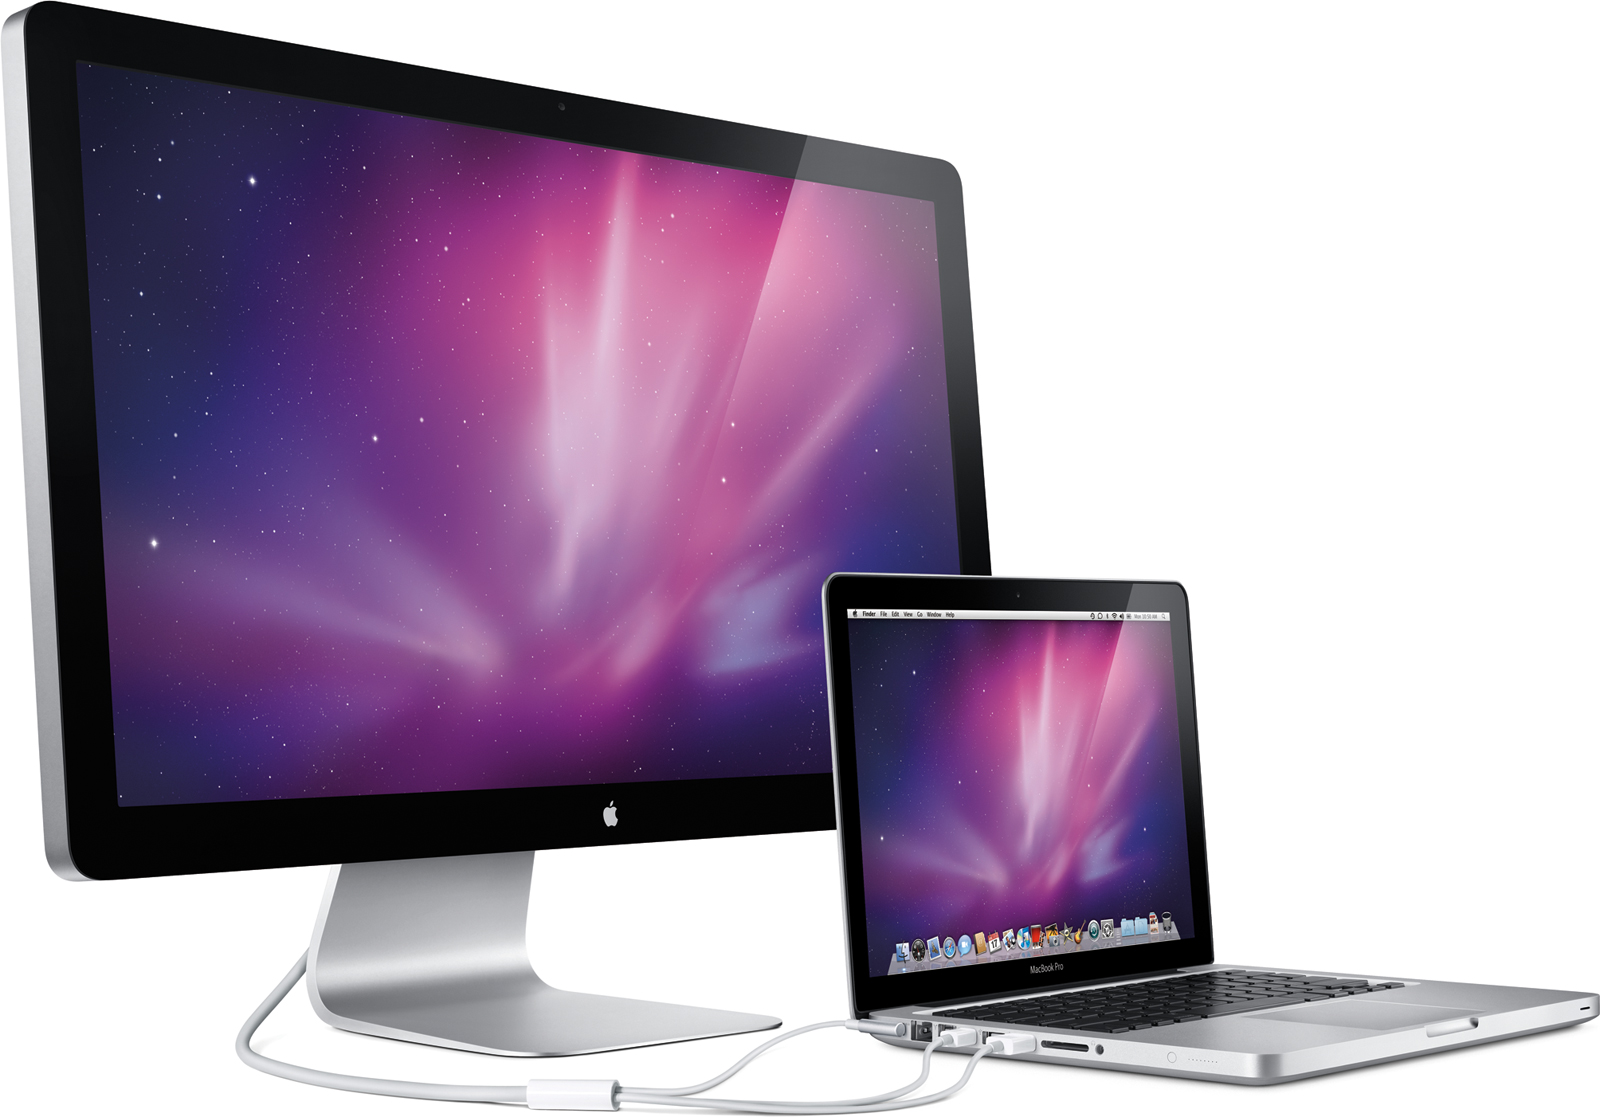 تعمل Apple على إصلاح مشاكل شاشات LED للسينما المتصلة بأجهزة Mac المزودة بتقنية Thunderbolt